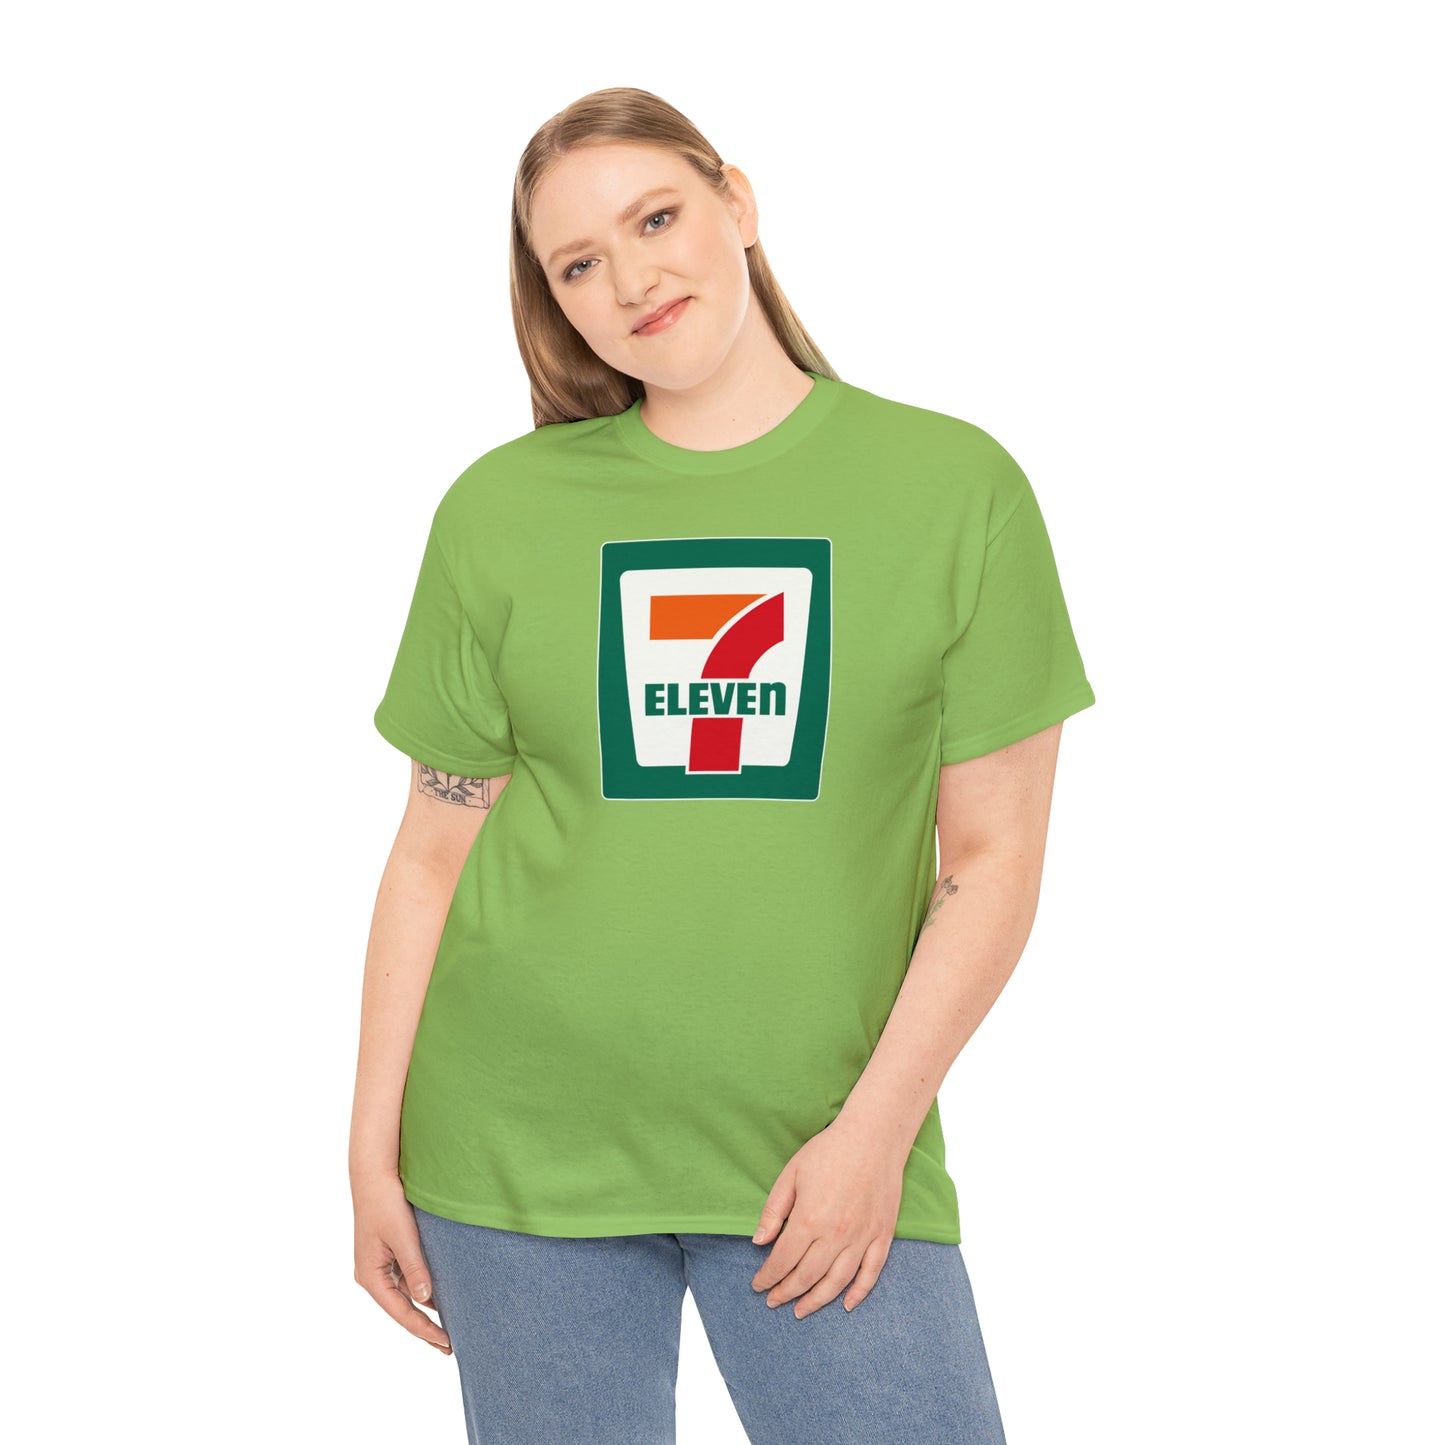 Seven 11 T-Shirt